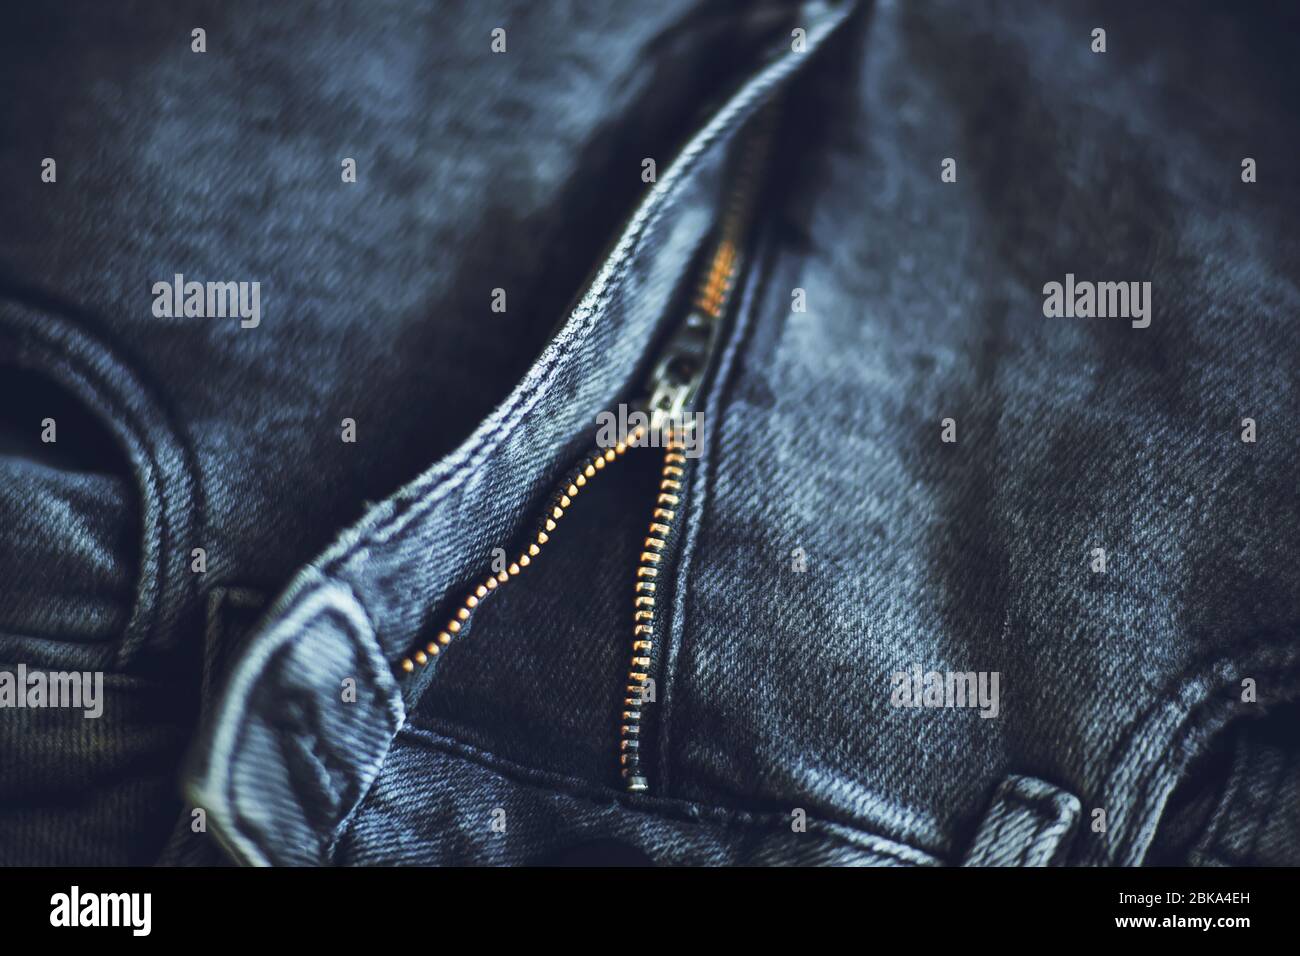 La parte superiore dei jeans alla moda grigio scuro in tessuto grezzo, che si fissa con una zip, illuminata dalla luce. Foto Stock